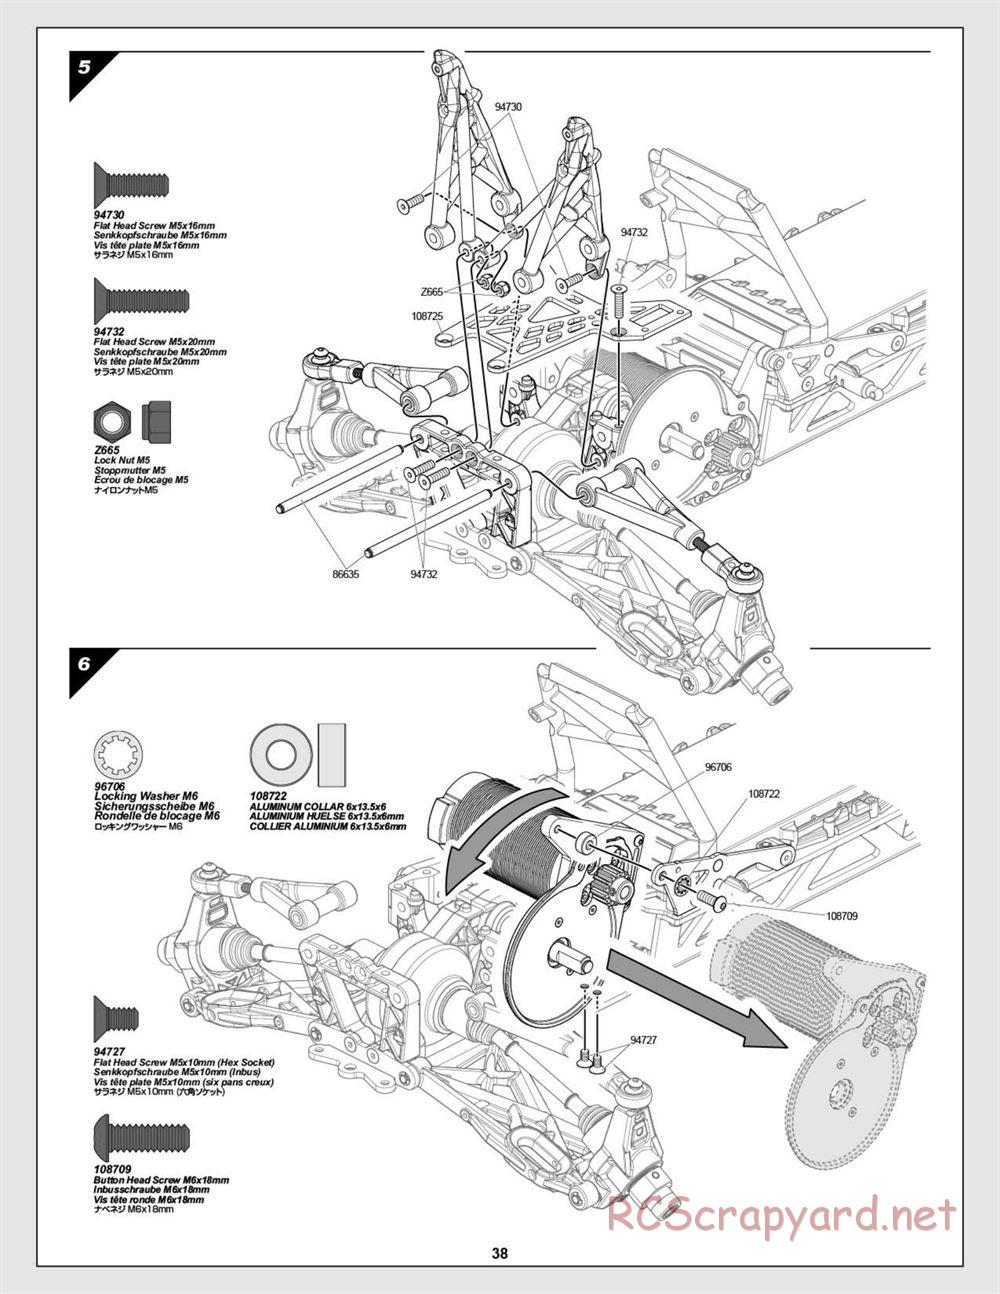 HPI - Baja 5B Flux Buggy - Manual - Page 38